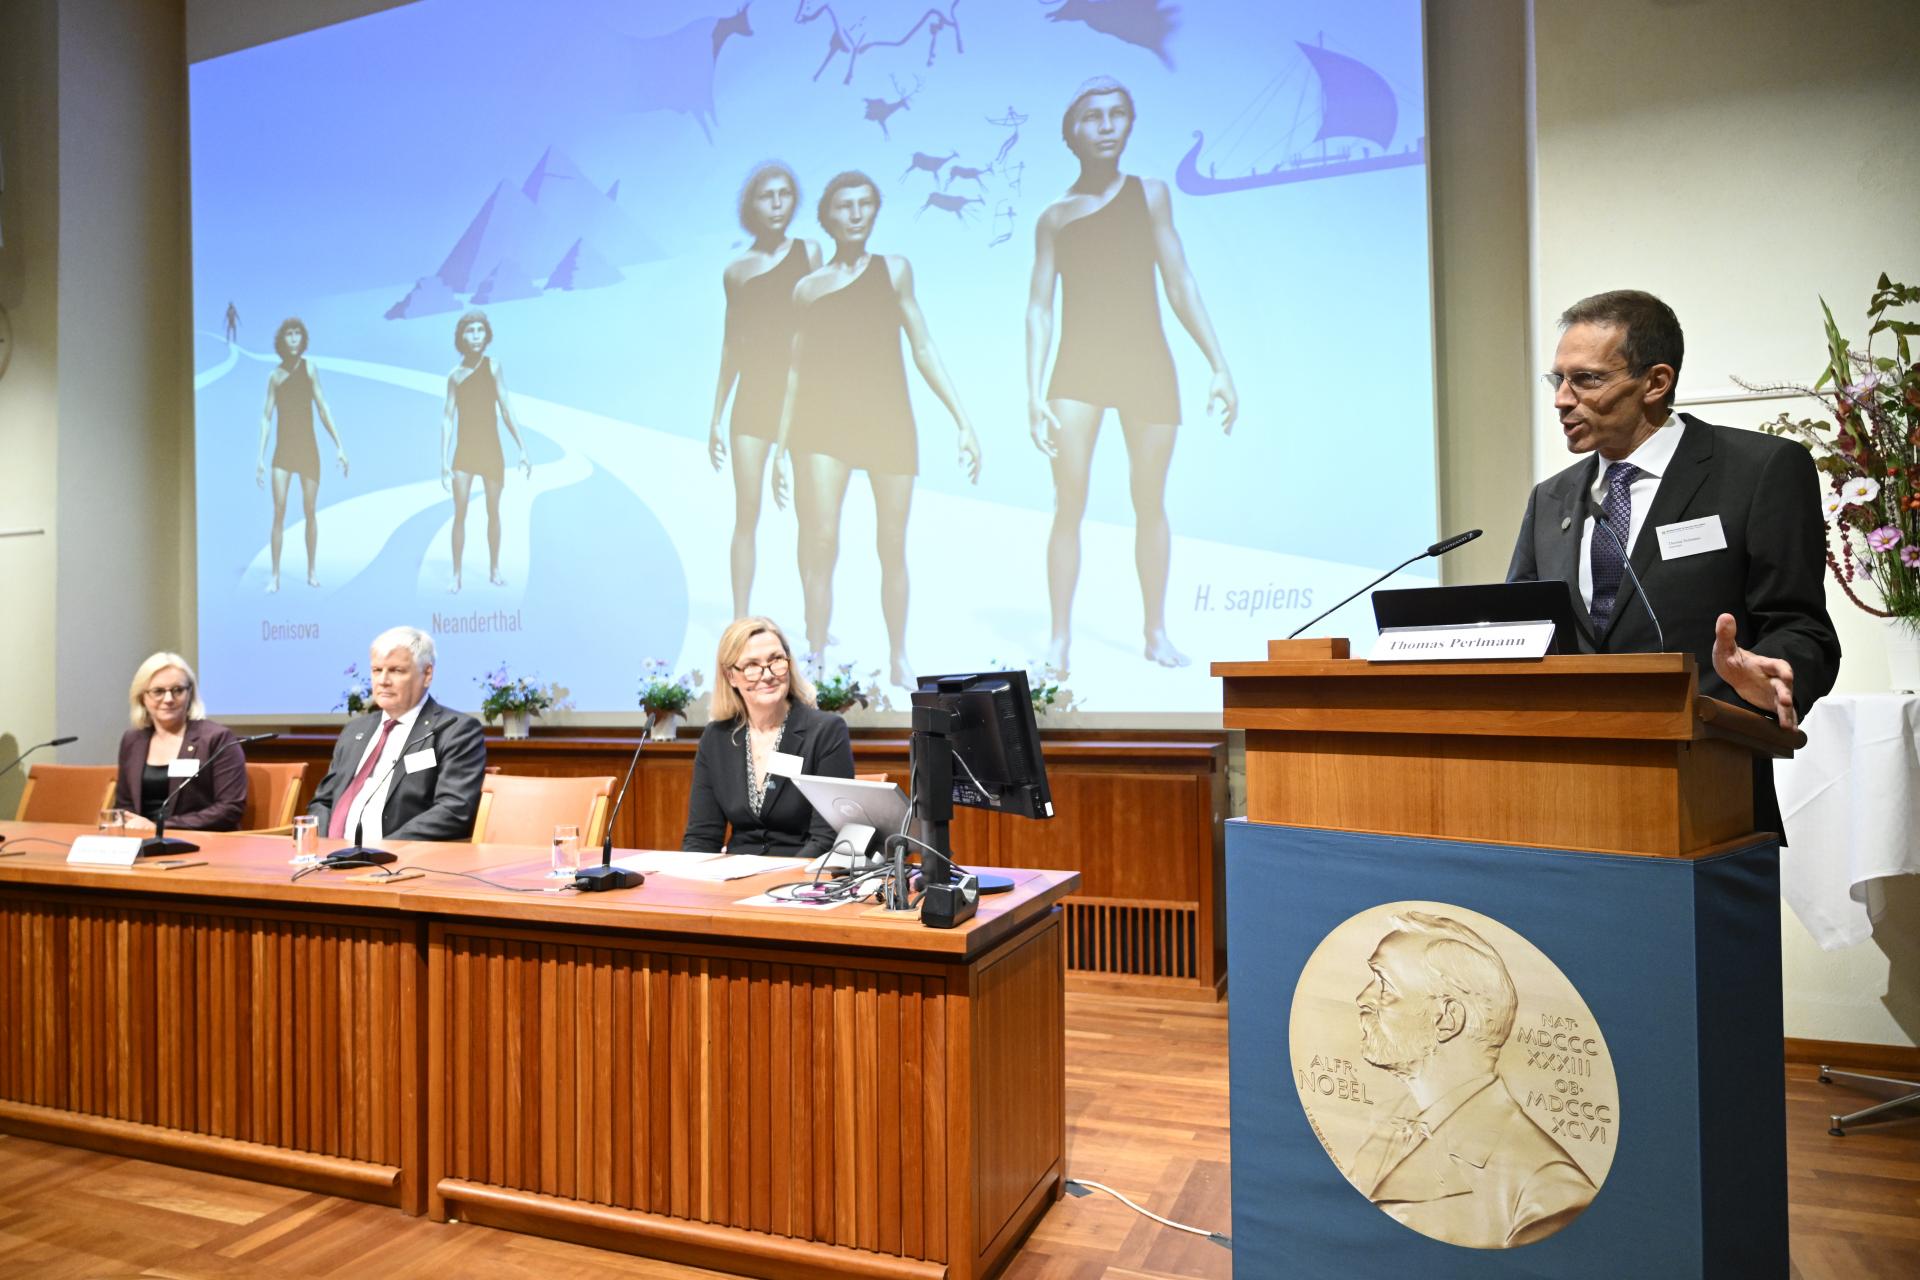 اسوانته پاابو زیست شناس سوئدی؛ برنده جایزه نوبل پزشکی 2022